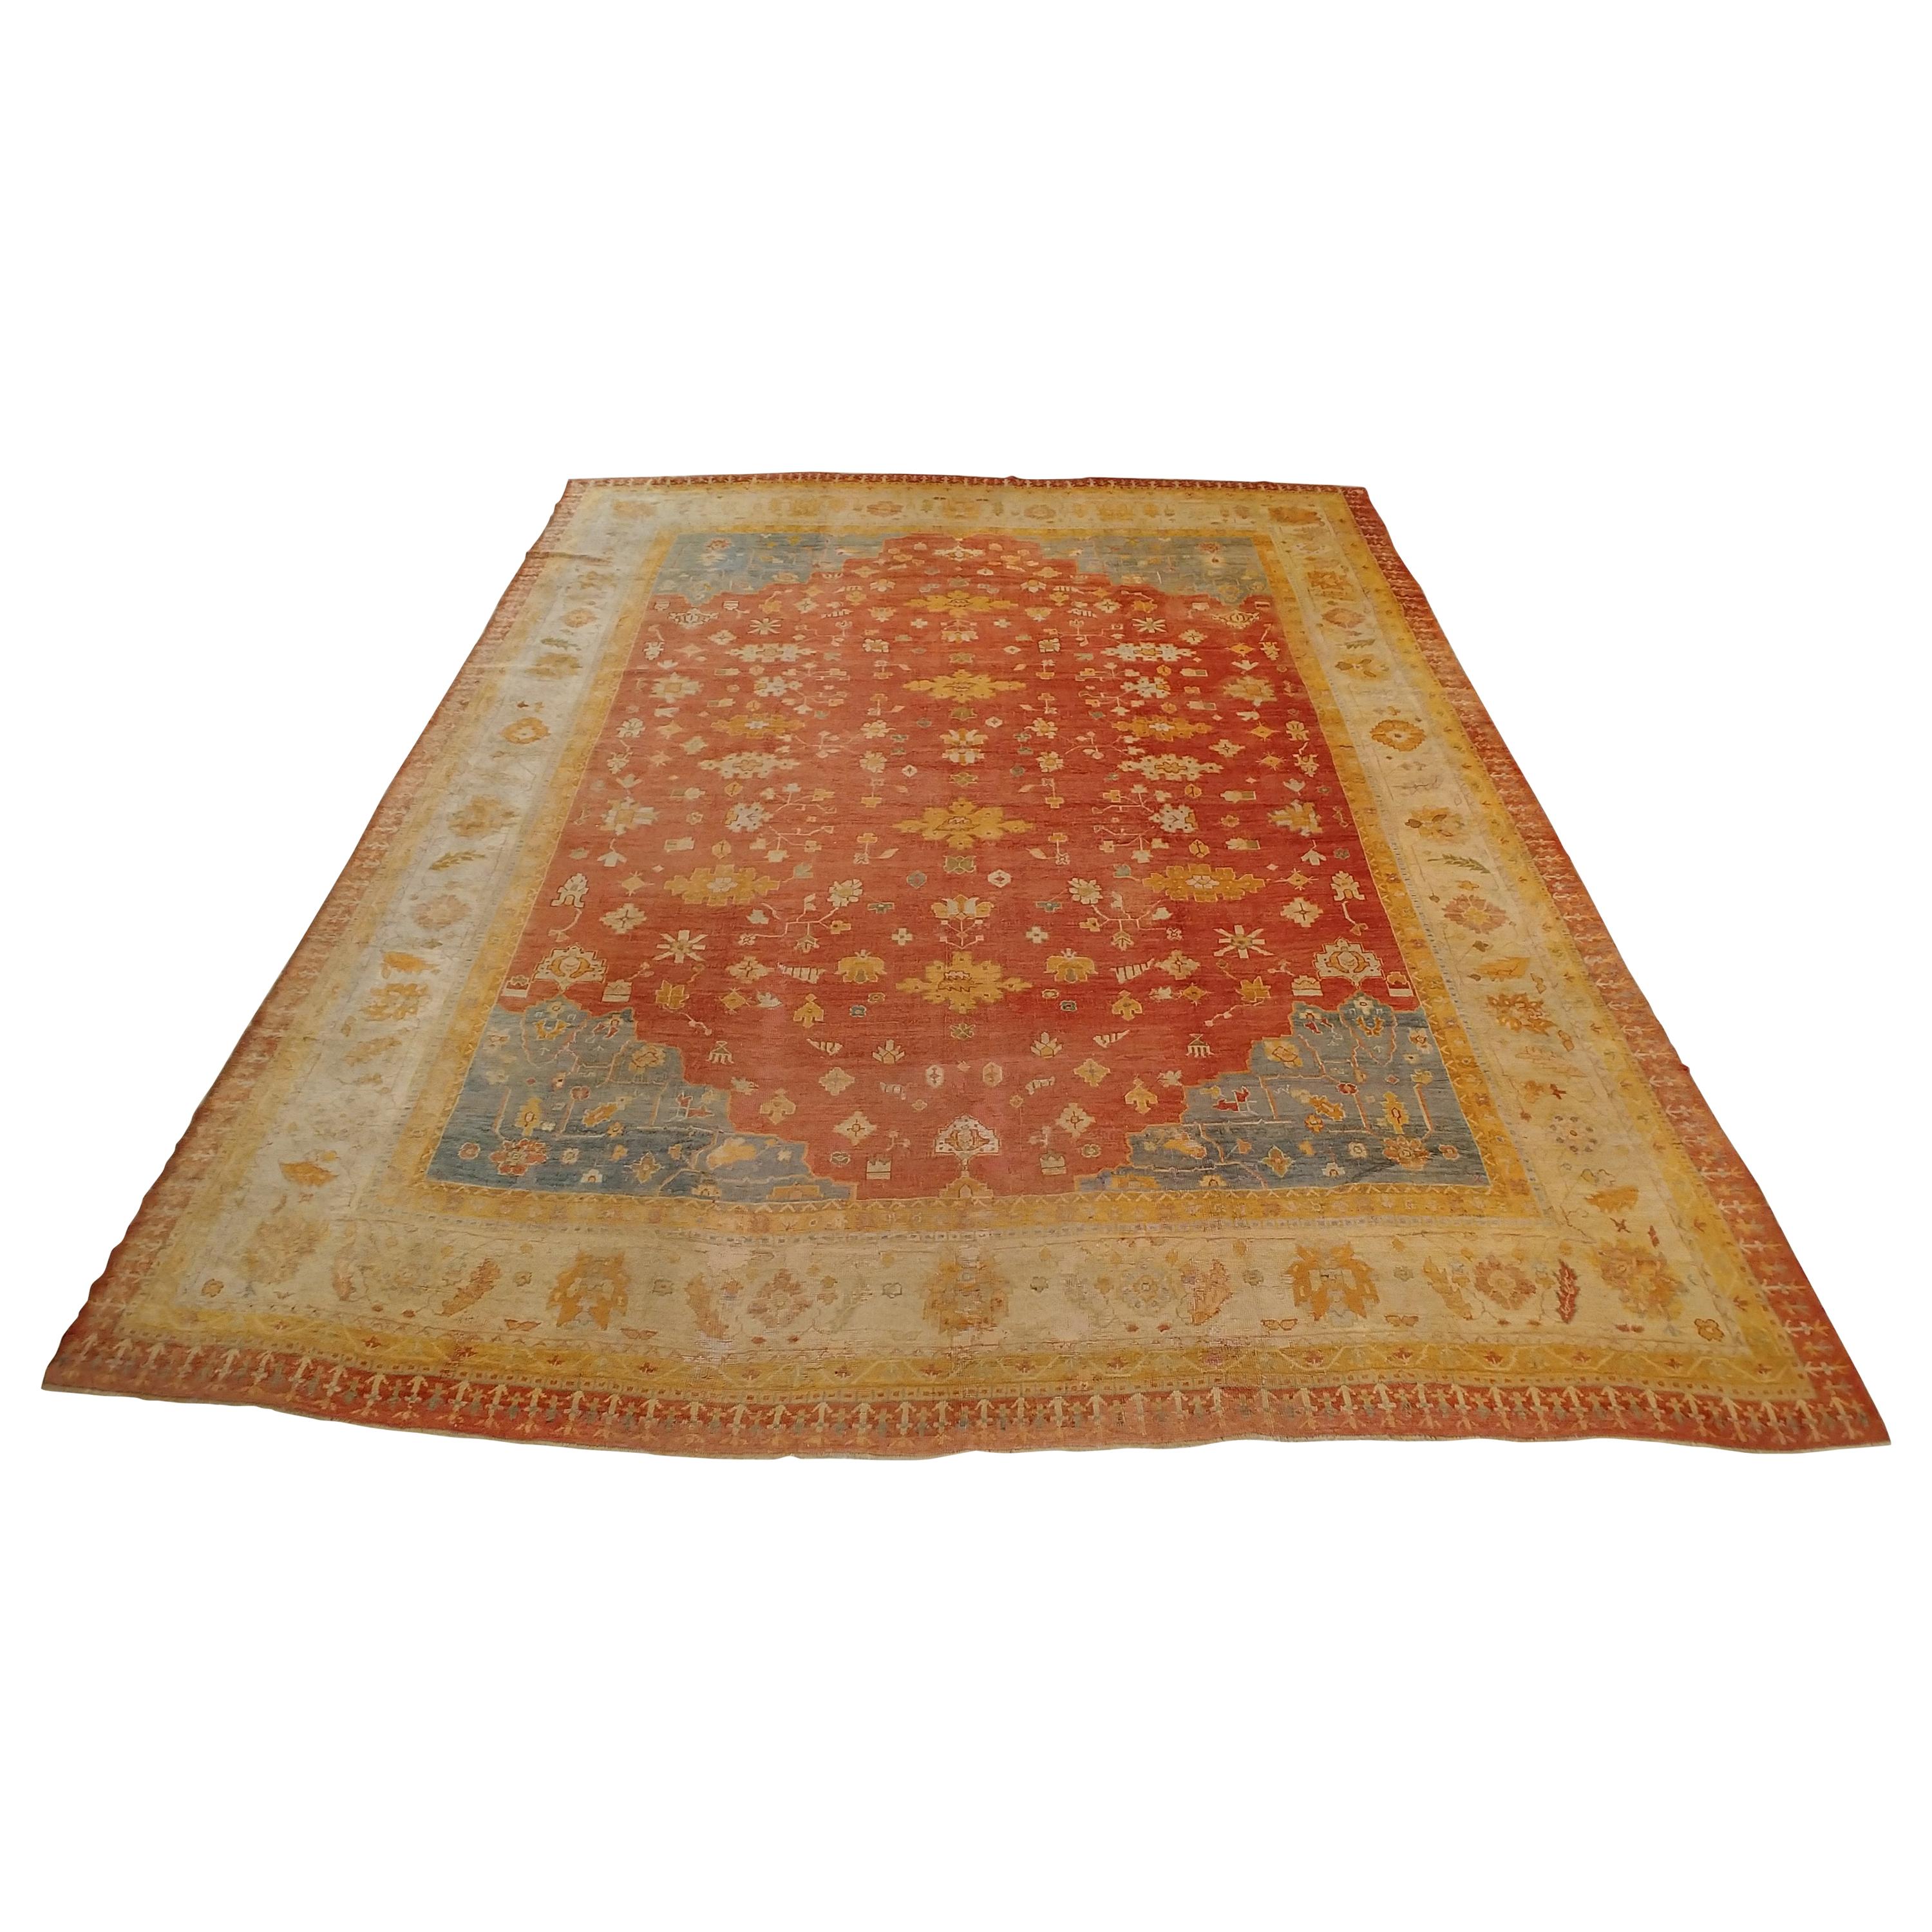 Antique Oushak Carpet, Handmade Turkish Oriental Rug, Beige, Coral, Light Blue For Sale